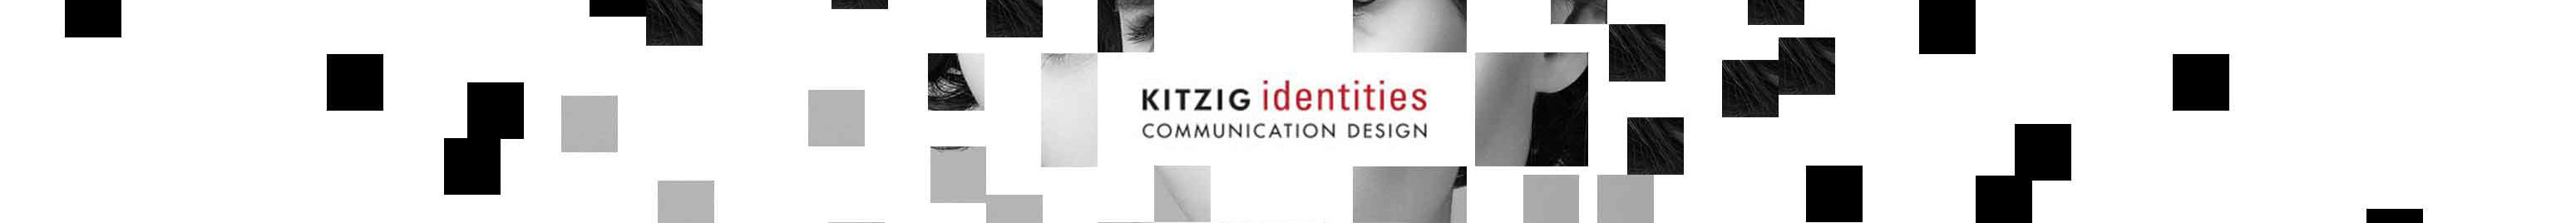 Banner profilu uživatele Kitzig Identities